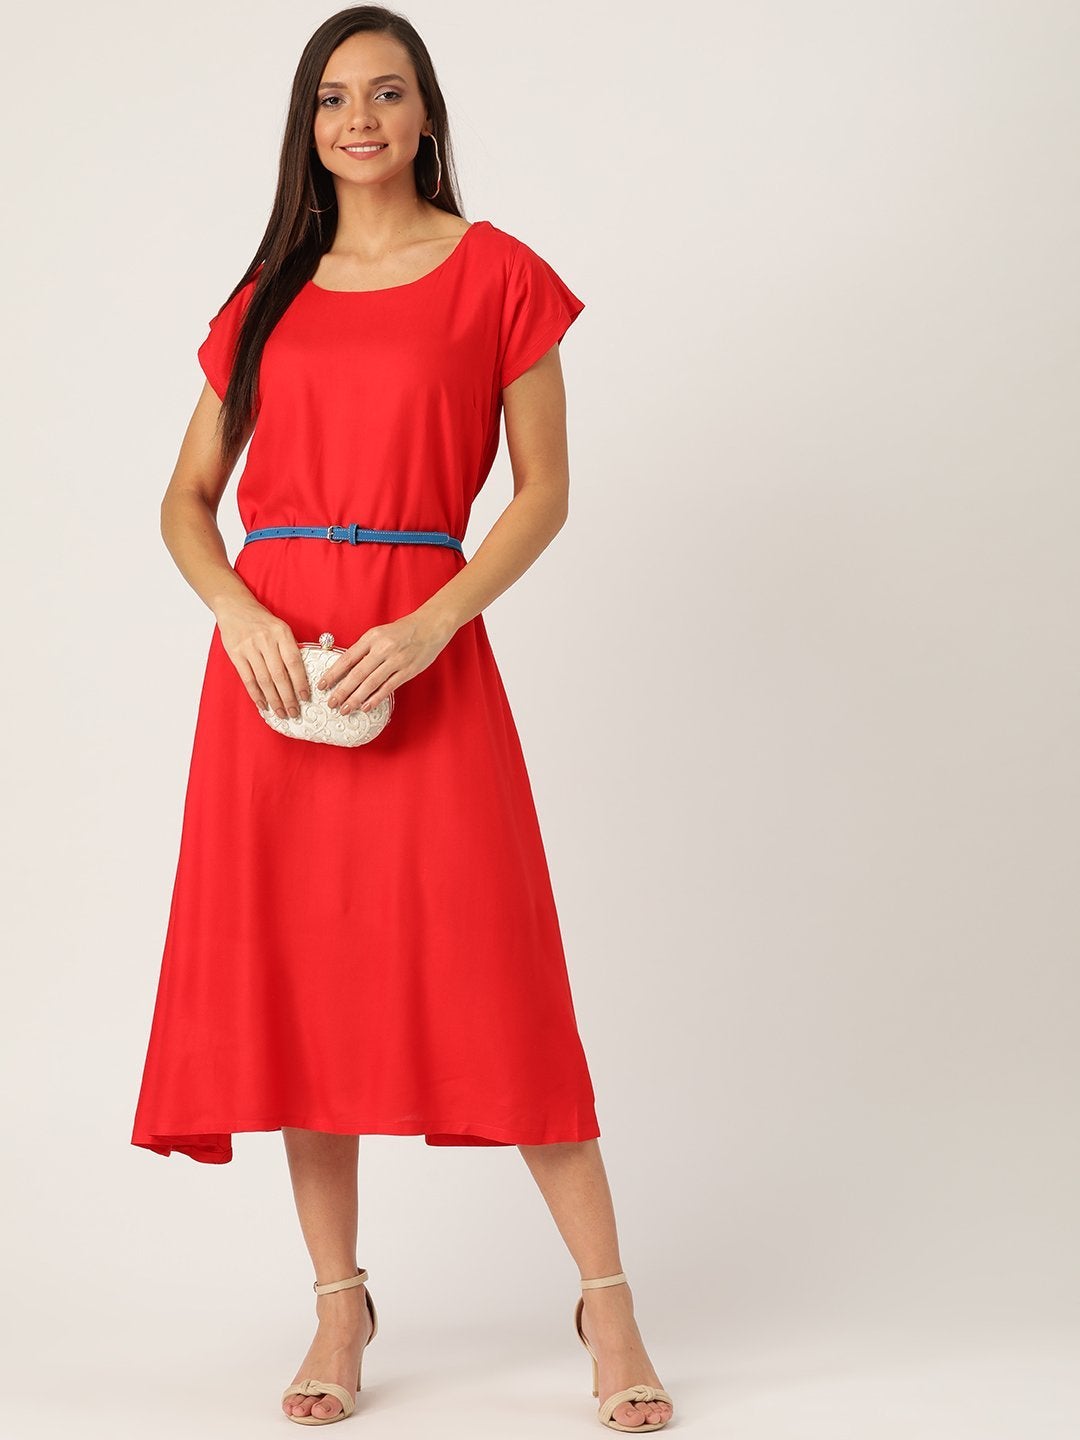 Women's Red Dress Blue Belt - InWeave